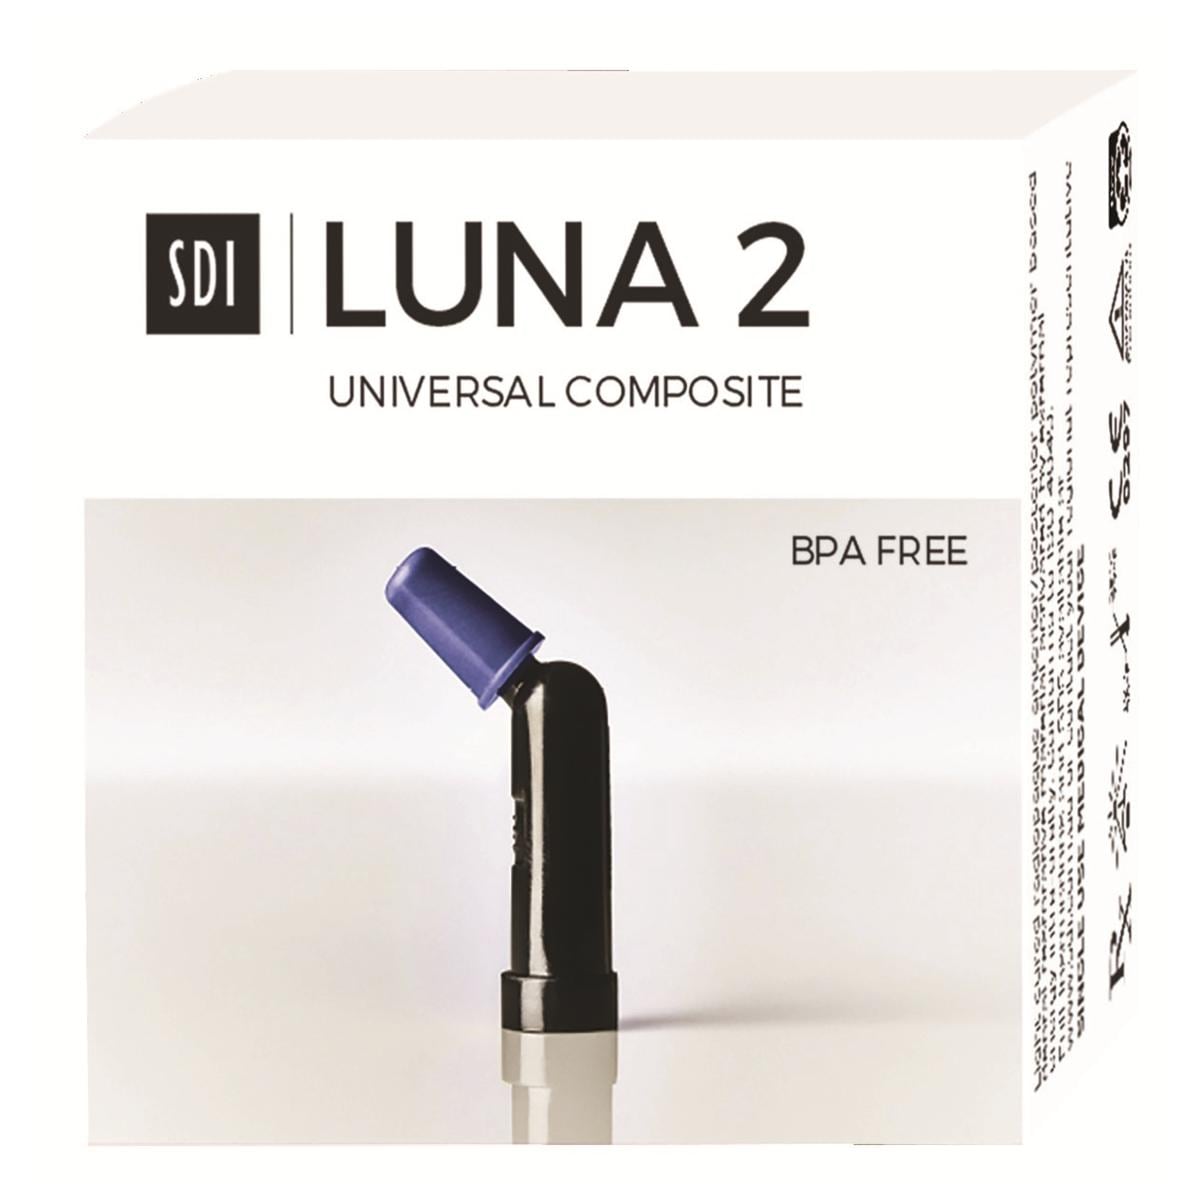 Luna 2 - boite de 20 compules de 0,25g teinte A2 - 8452052 - SDI